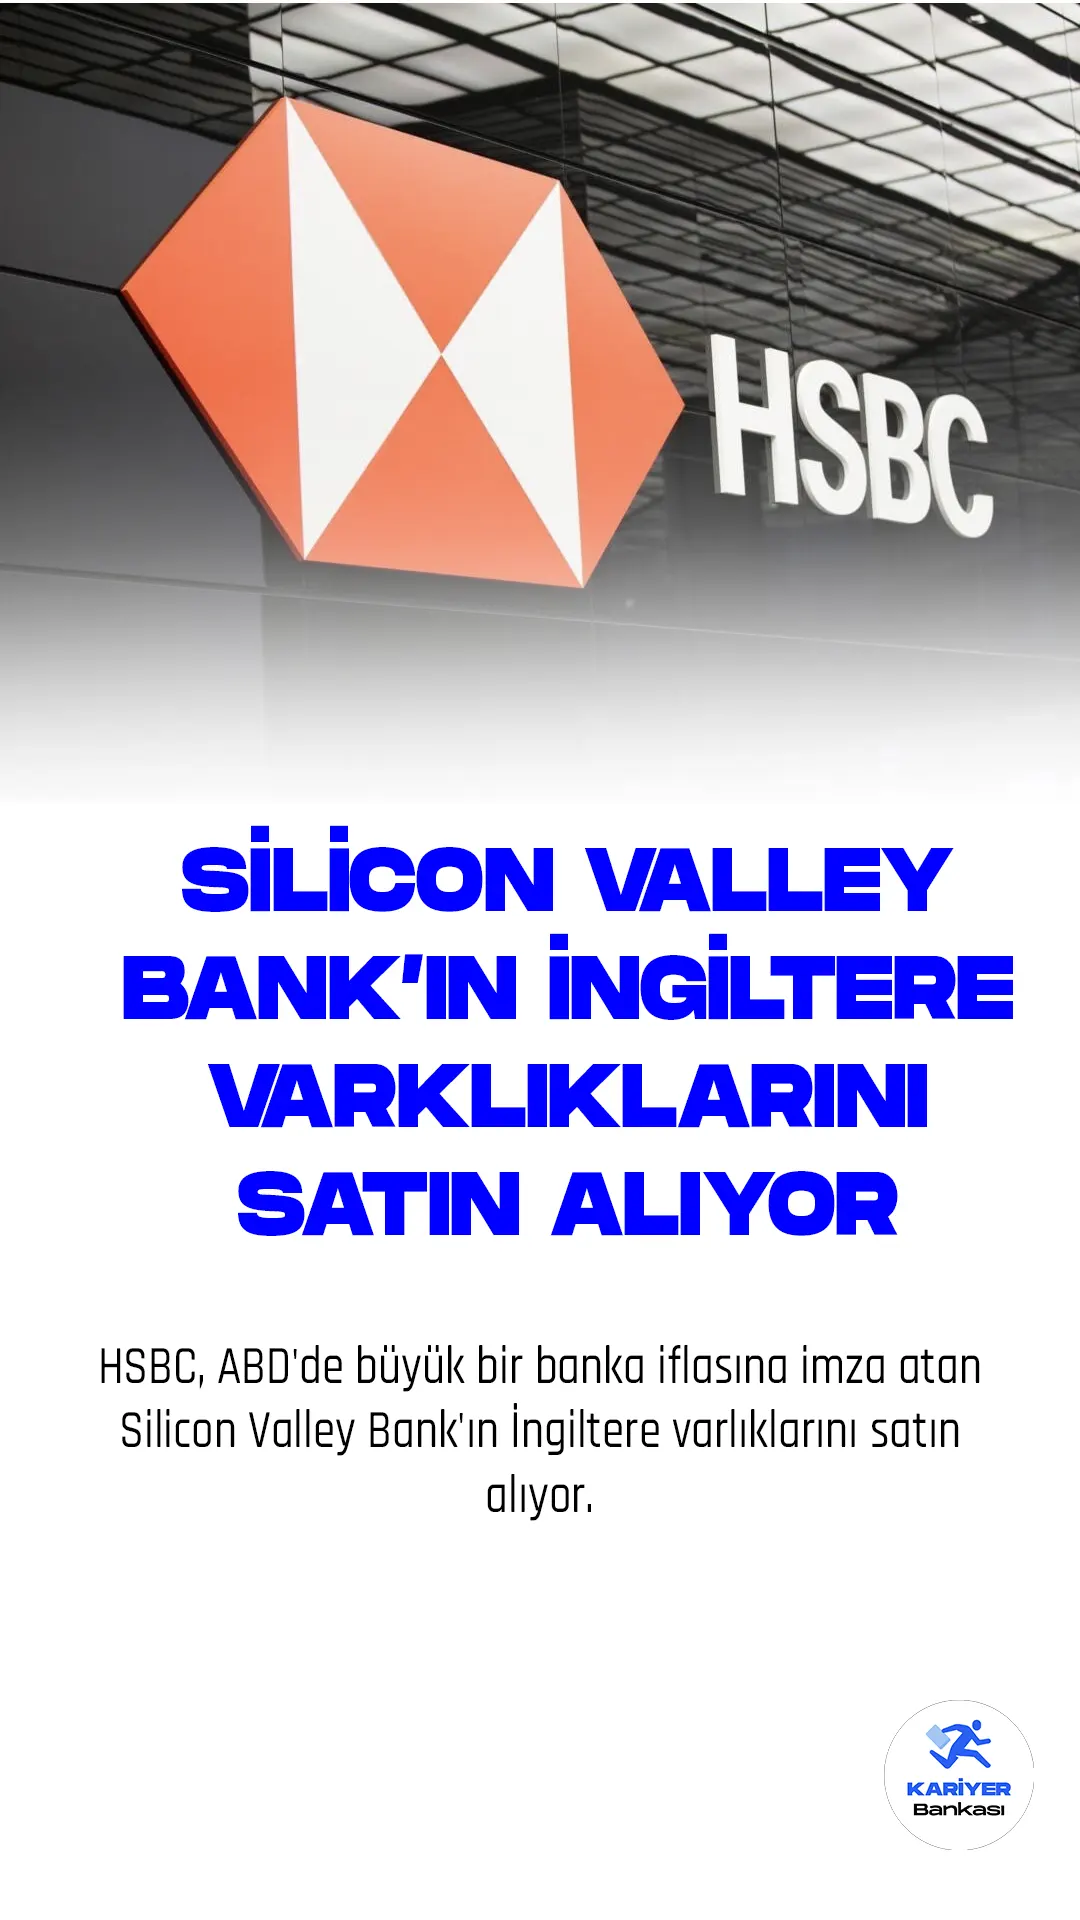 HSBC, ABD'de büyük bir banka iflasına imza atan Silicon Valley Bank'ın İngiltere varlıklarını satın alıyor. SVB İngiltere'nin borçlarının 5,5 milyar sterlin ve mevduatlarının 6,7 milyar sterlin civarında olduğu belirtiliyor. İngiltere Merkez Bankası, SVB UK'nin satışının HSBC tarafından kolaylaştırıldığını doğrularken, İngiltere Maliye Bakanı Jeremy Hunt, müşterilerin mevduatlarının korunacağını ve vergi mükelleflerinin zararının olmayacağını açıkladı.